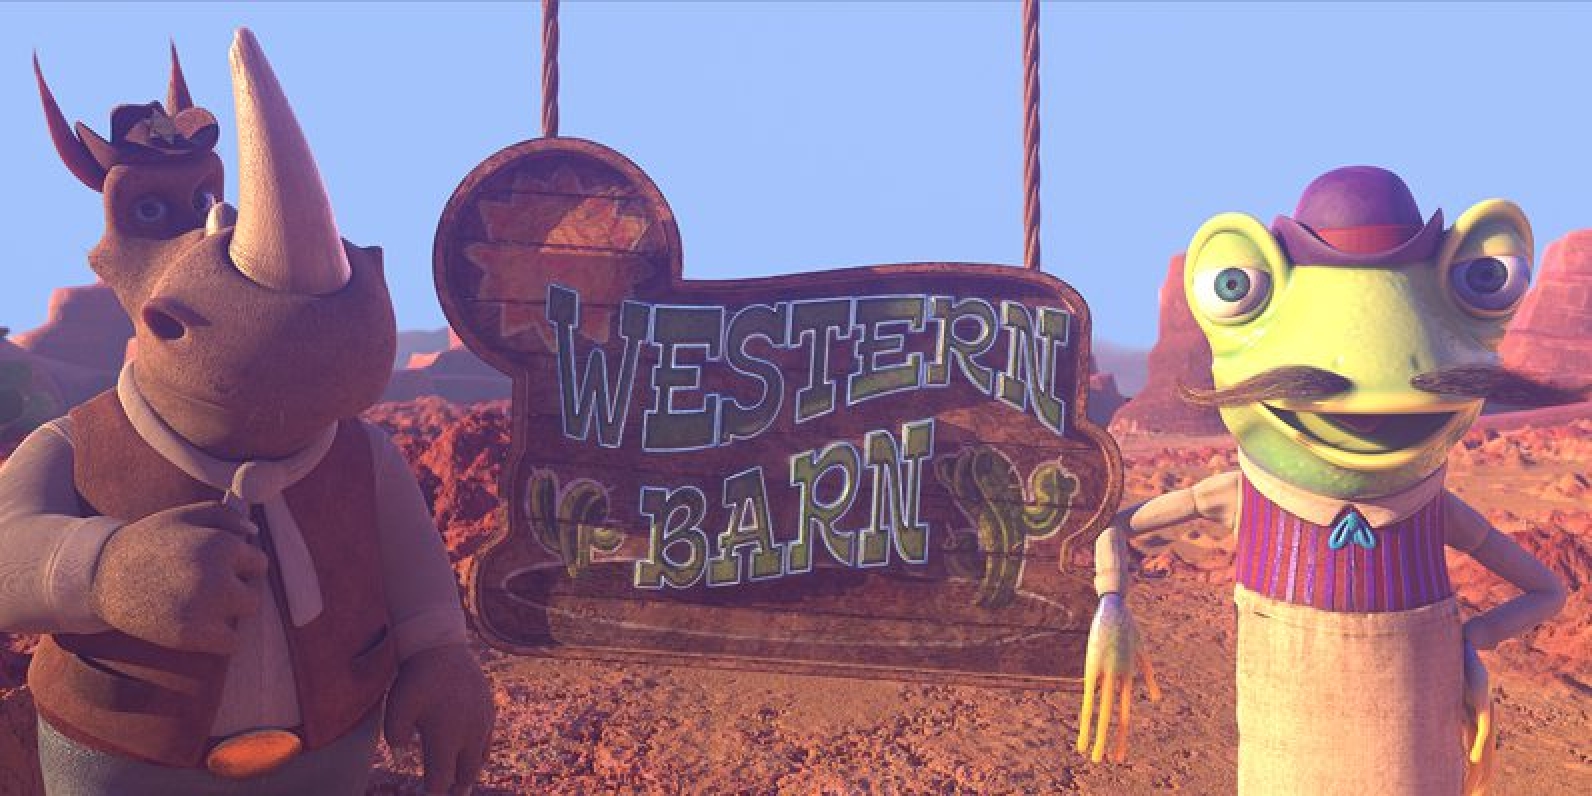 Western Barn